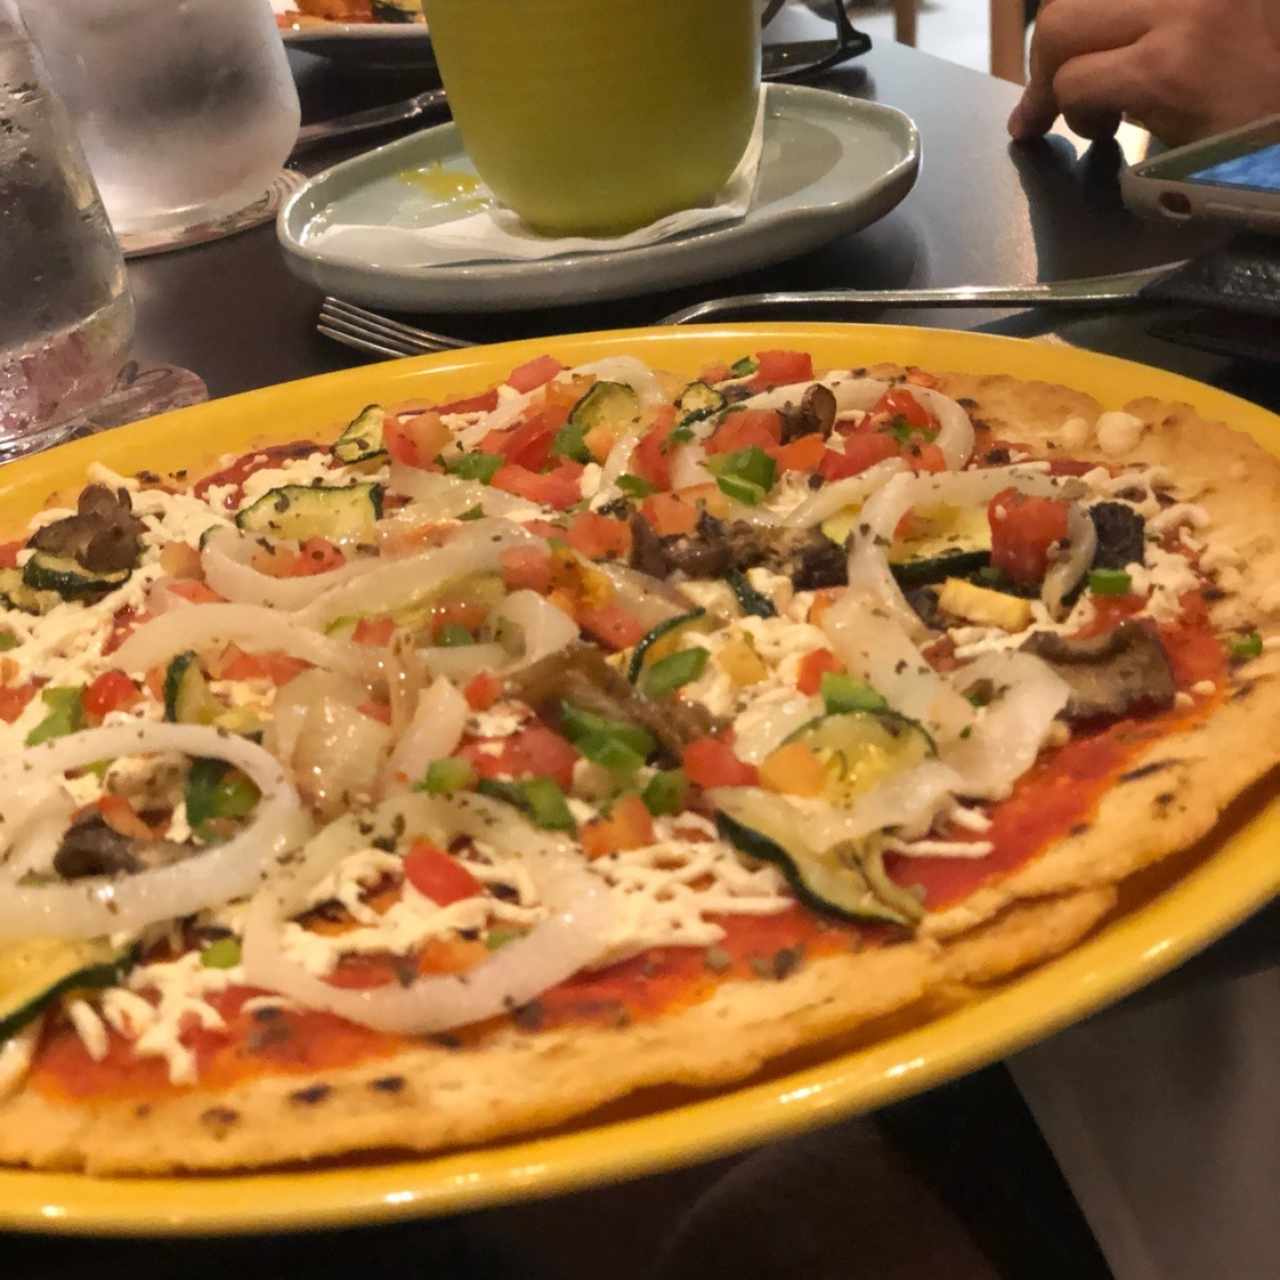 Pizzas - Vegetariana con queso vegano y libre de gluten